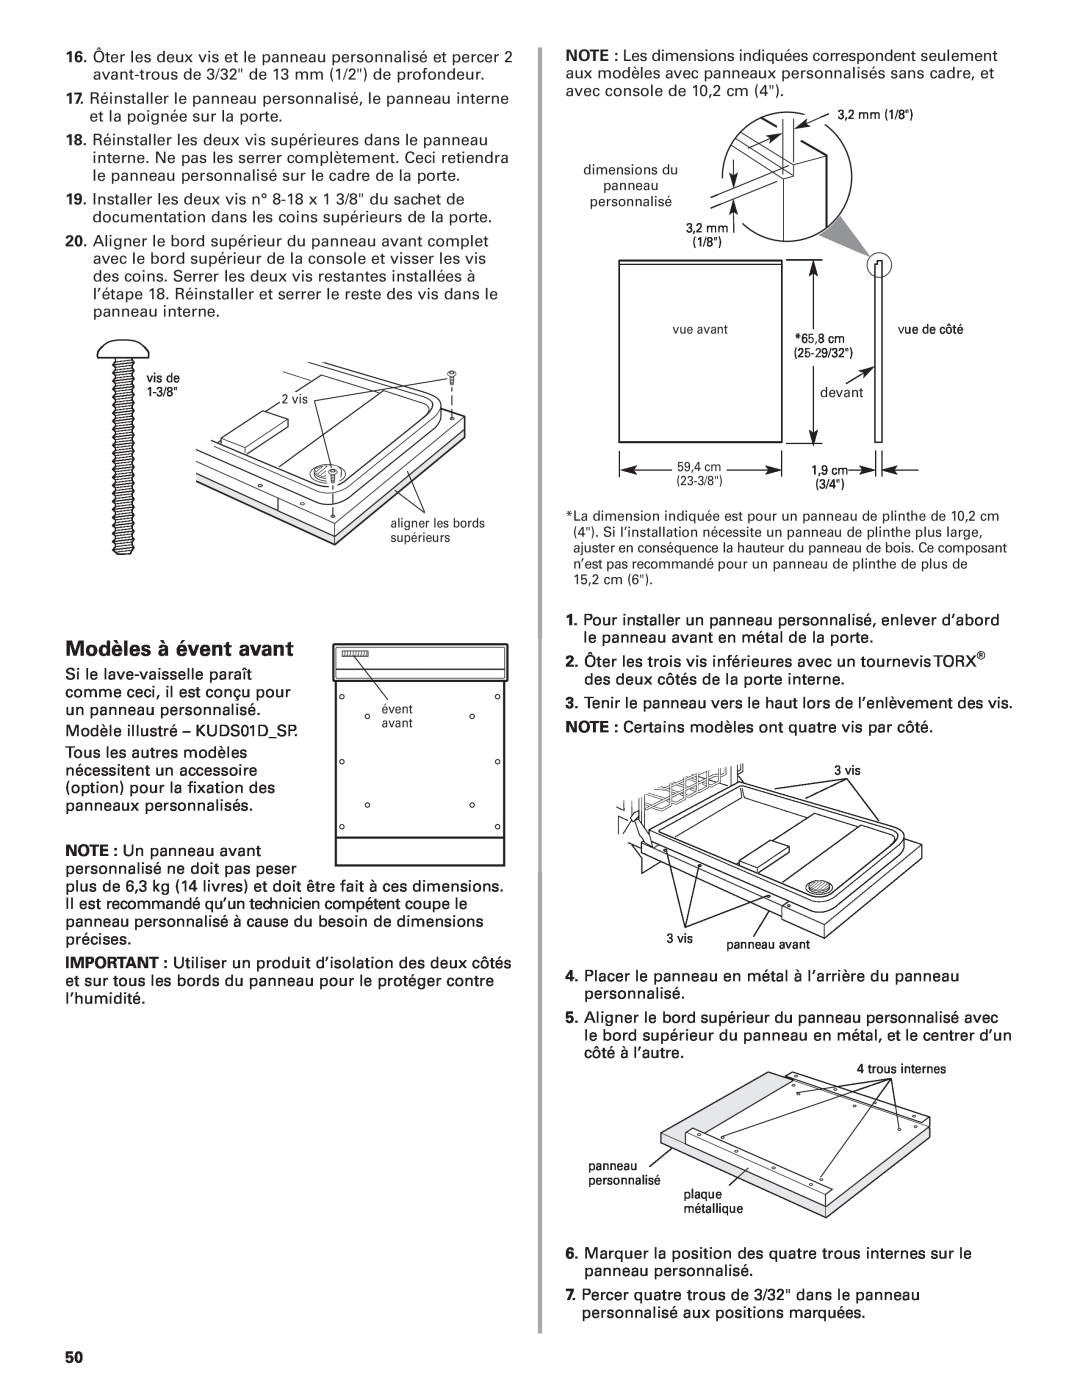 KitchenAid 8564554 installation instructions Modèles à évent avant, dimensions du panneau personnalisé, devant 